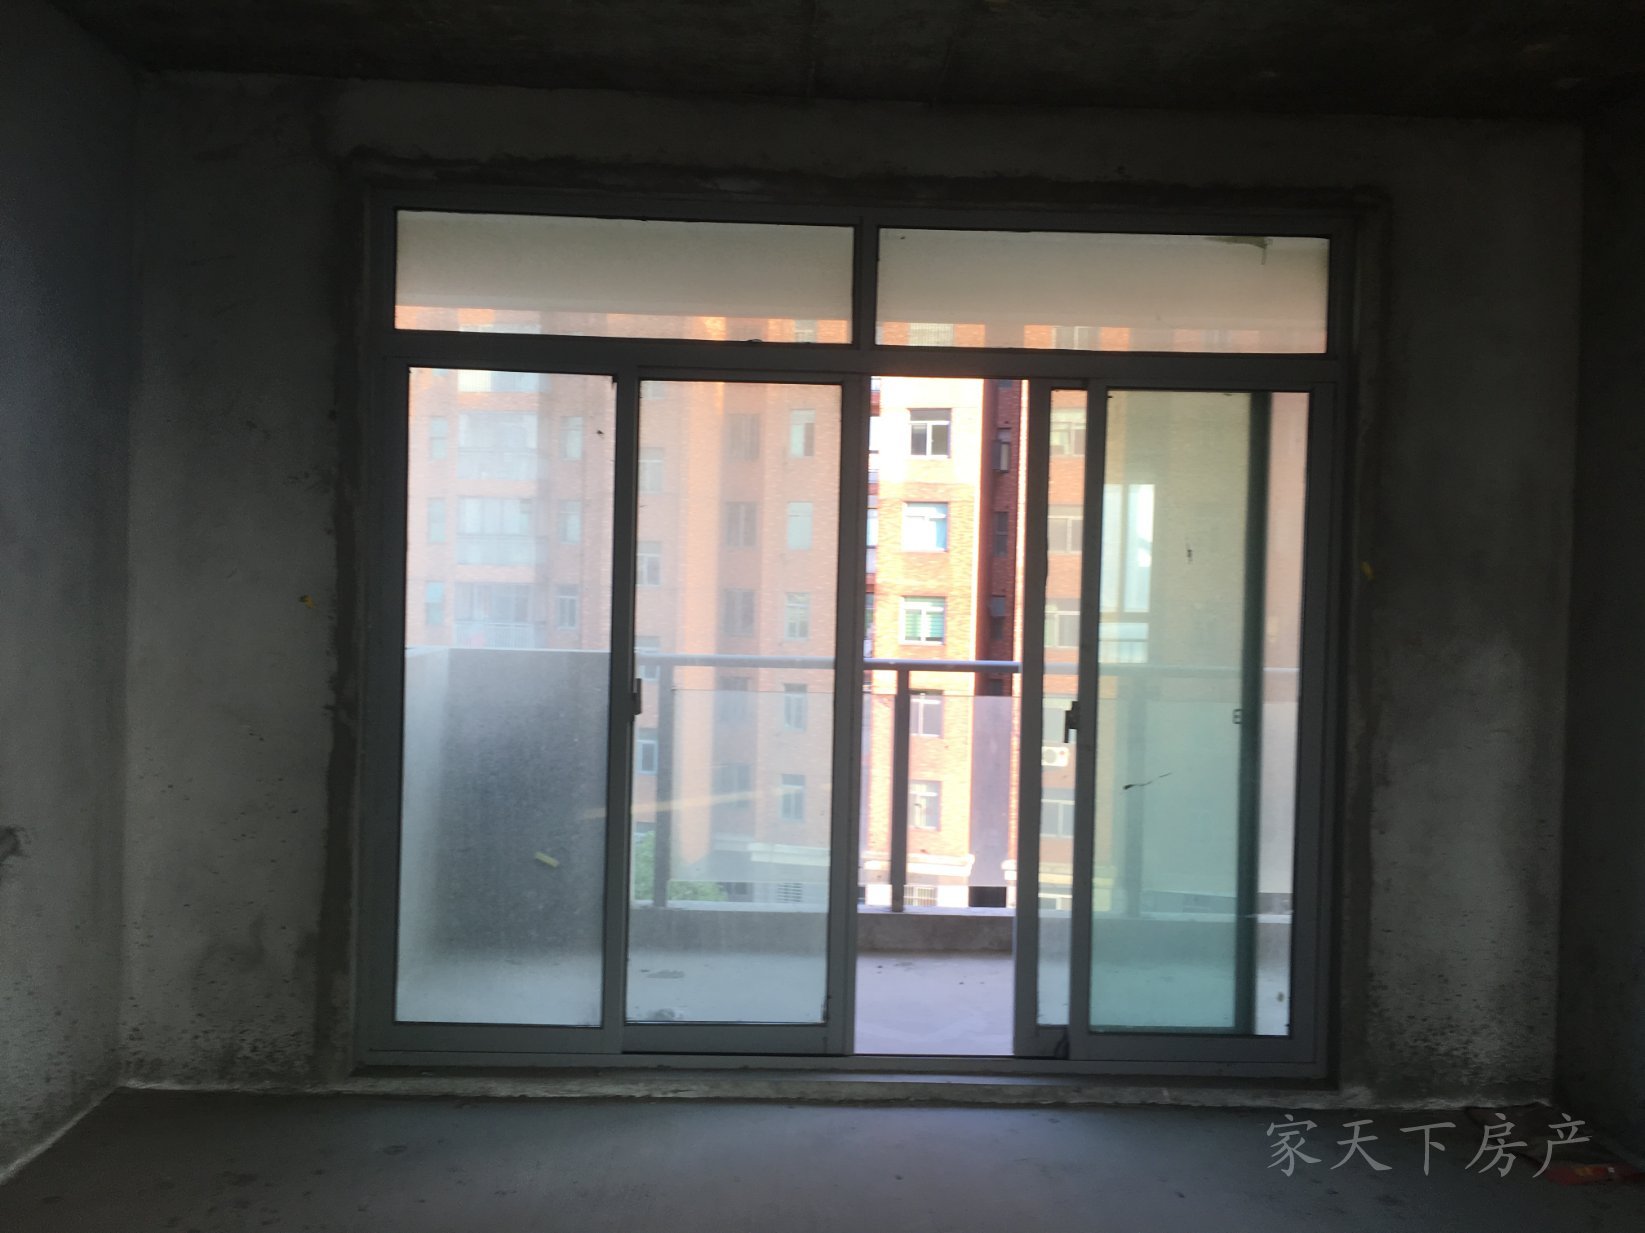 上海嘉苑,上海嘉苑中间楼层毛坯电梯新房12